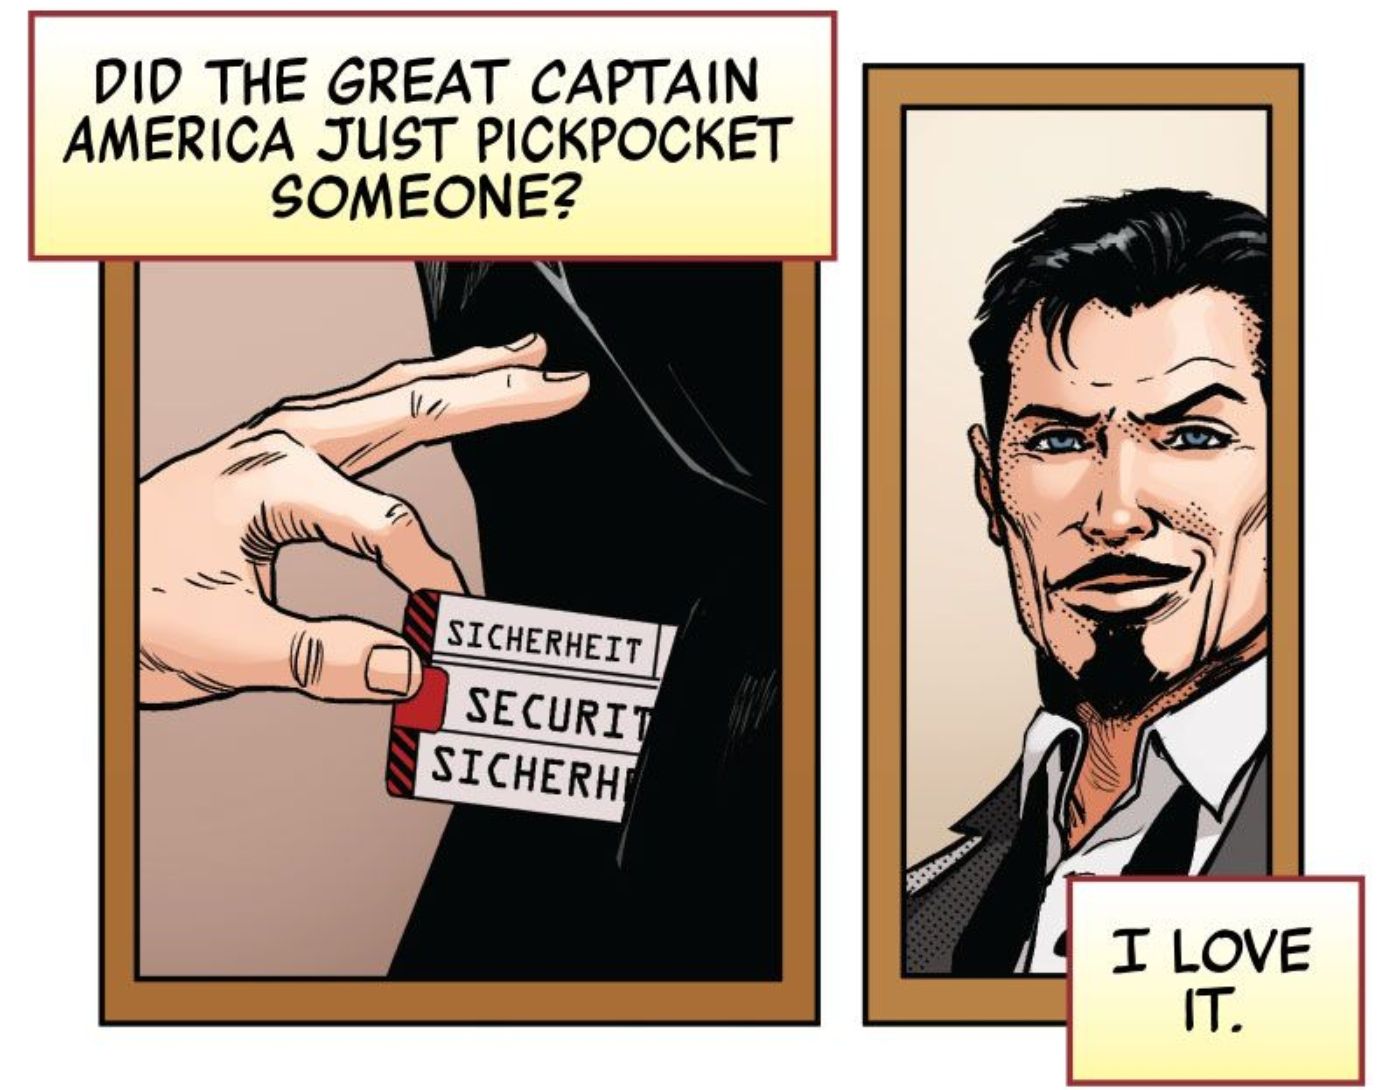 Tony Stark observando o Capitão América roubando alguém para obter informações.